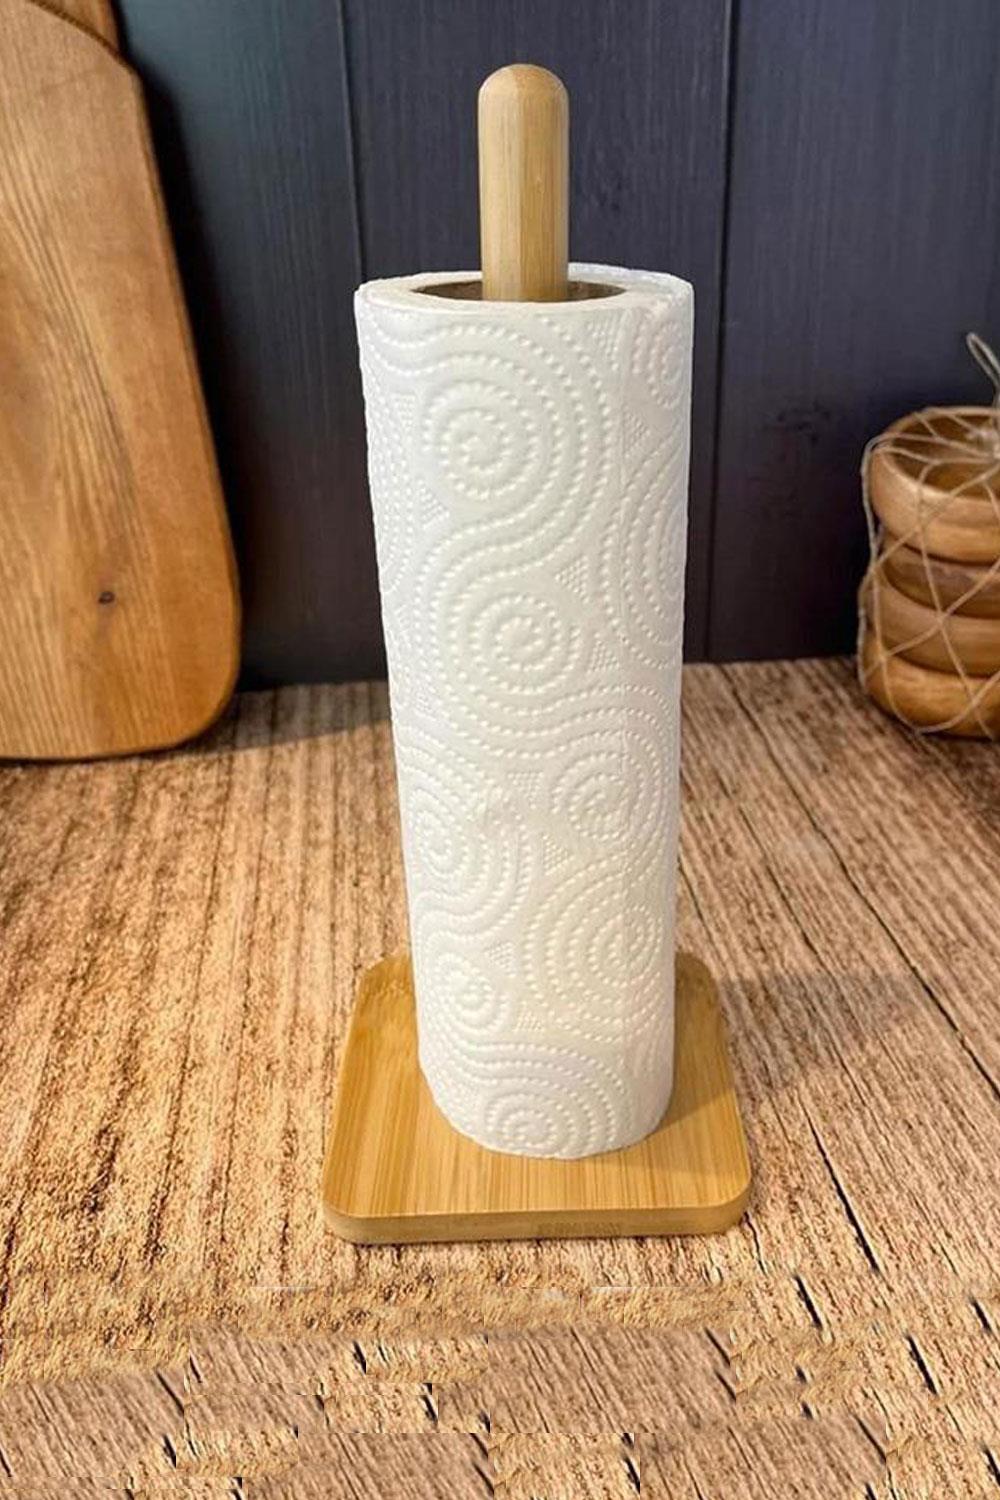 Çelikay I Mien Bambu Kağıt Havluluk Tezgahüstü